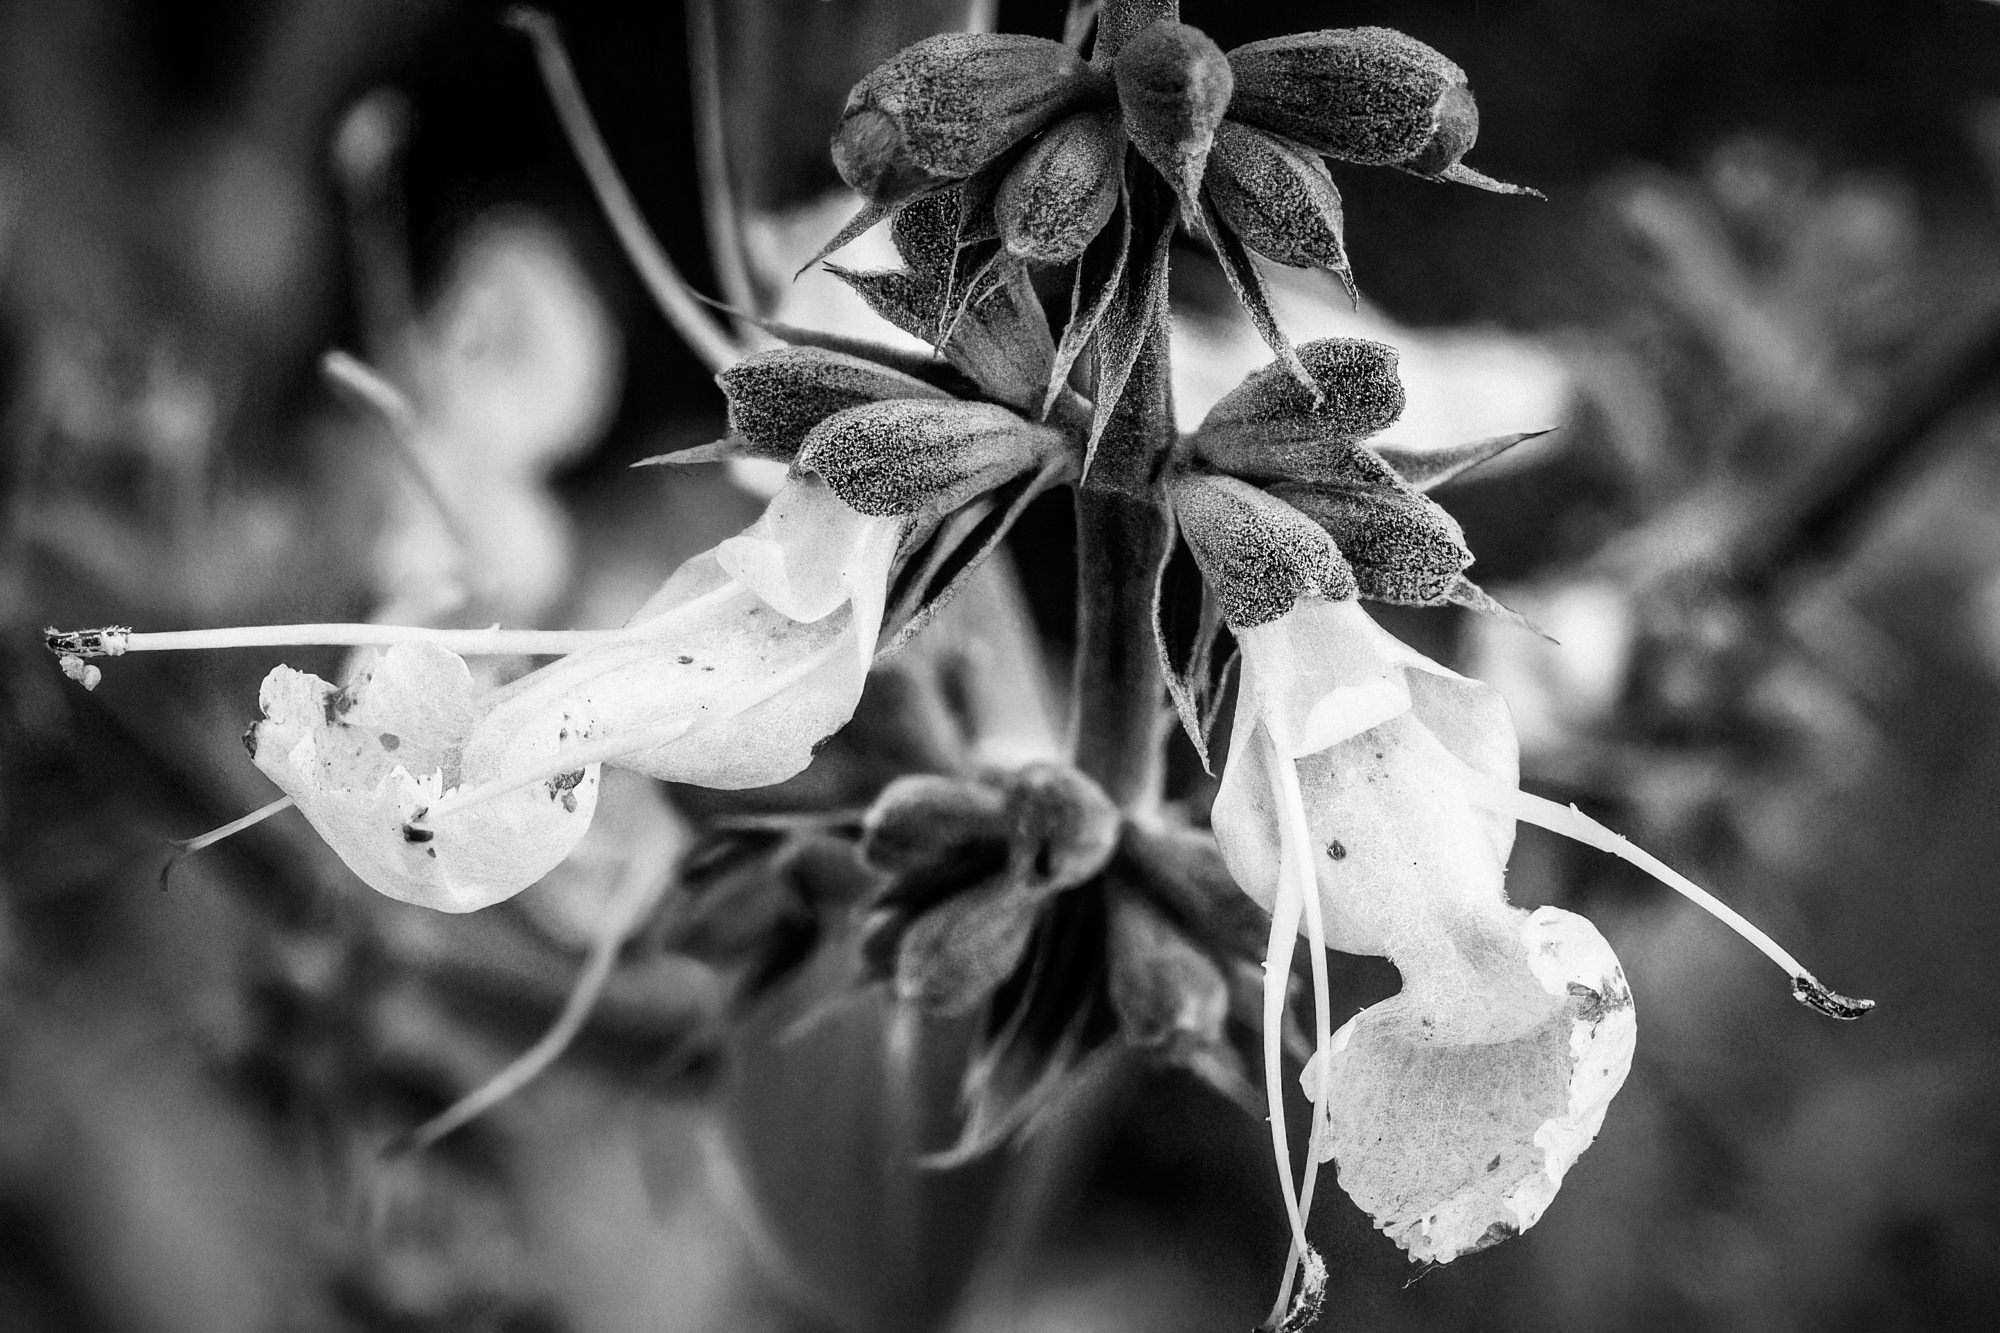  White Sage - <em>Salvia apiana</em>